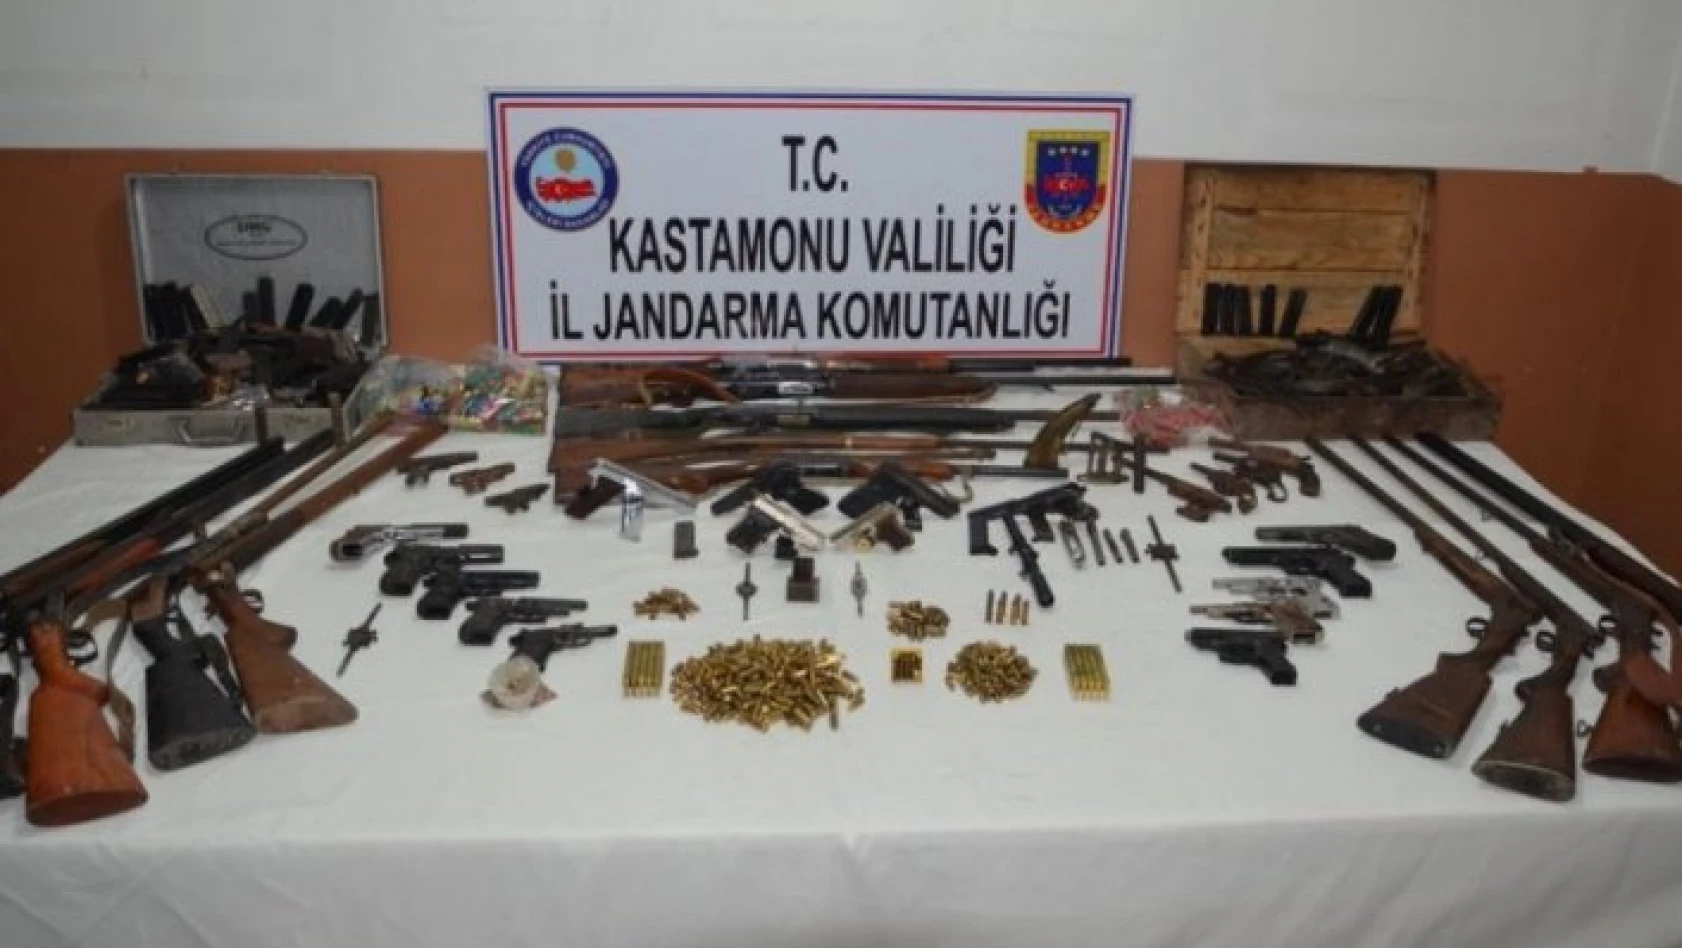 Kastamonu merkezli 6 ilde silah kaçakçılığı operasyonu